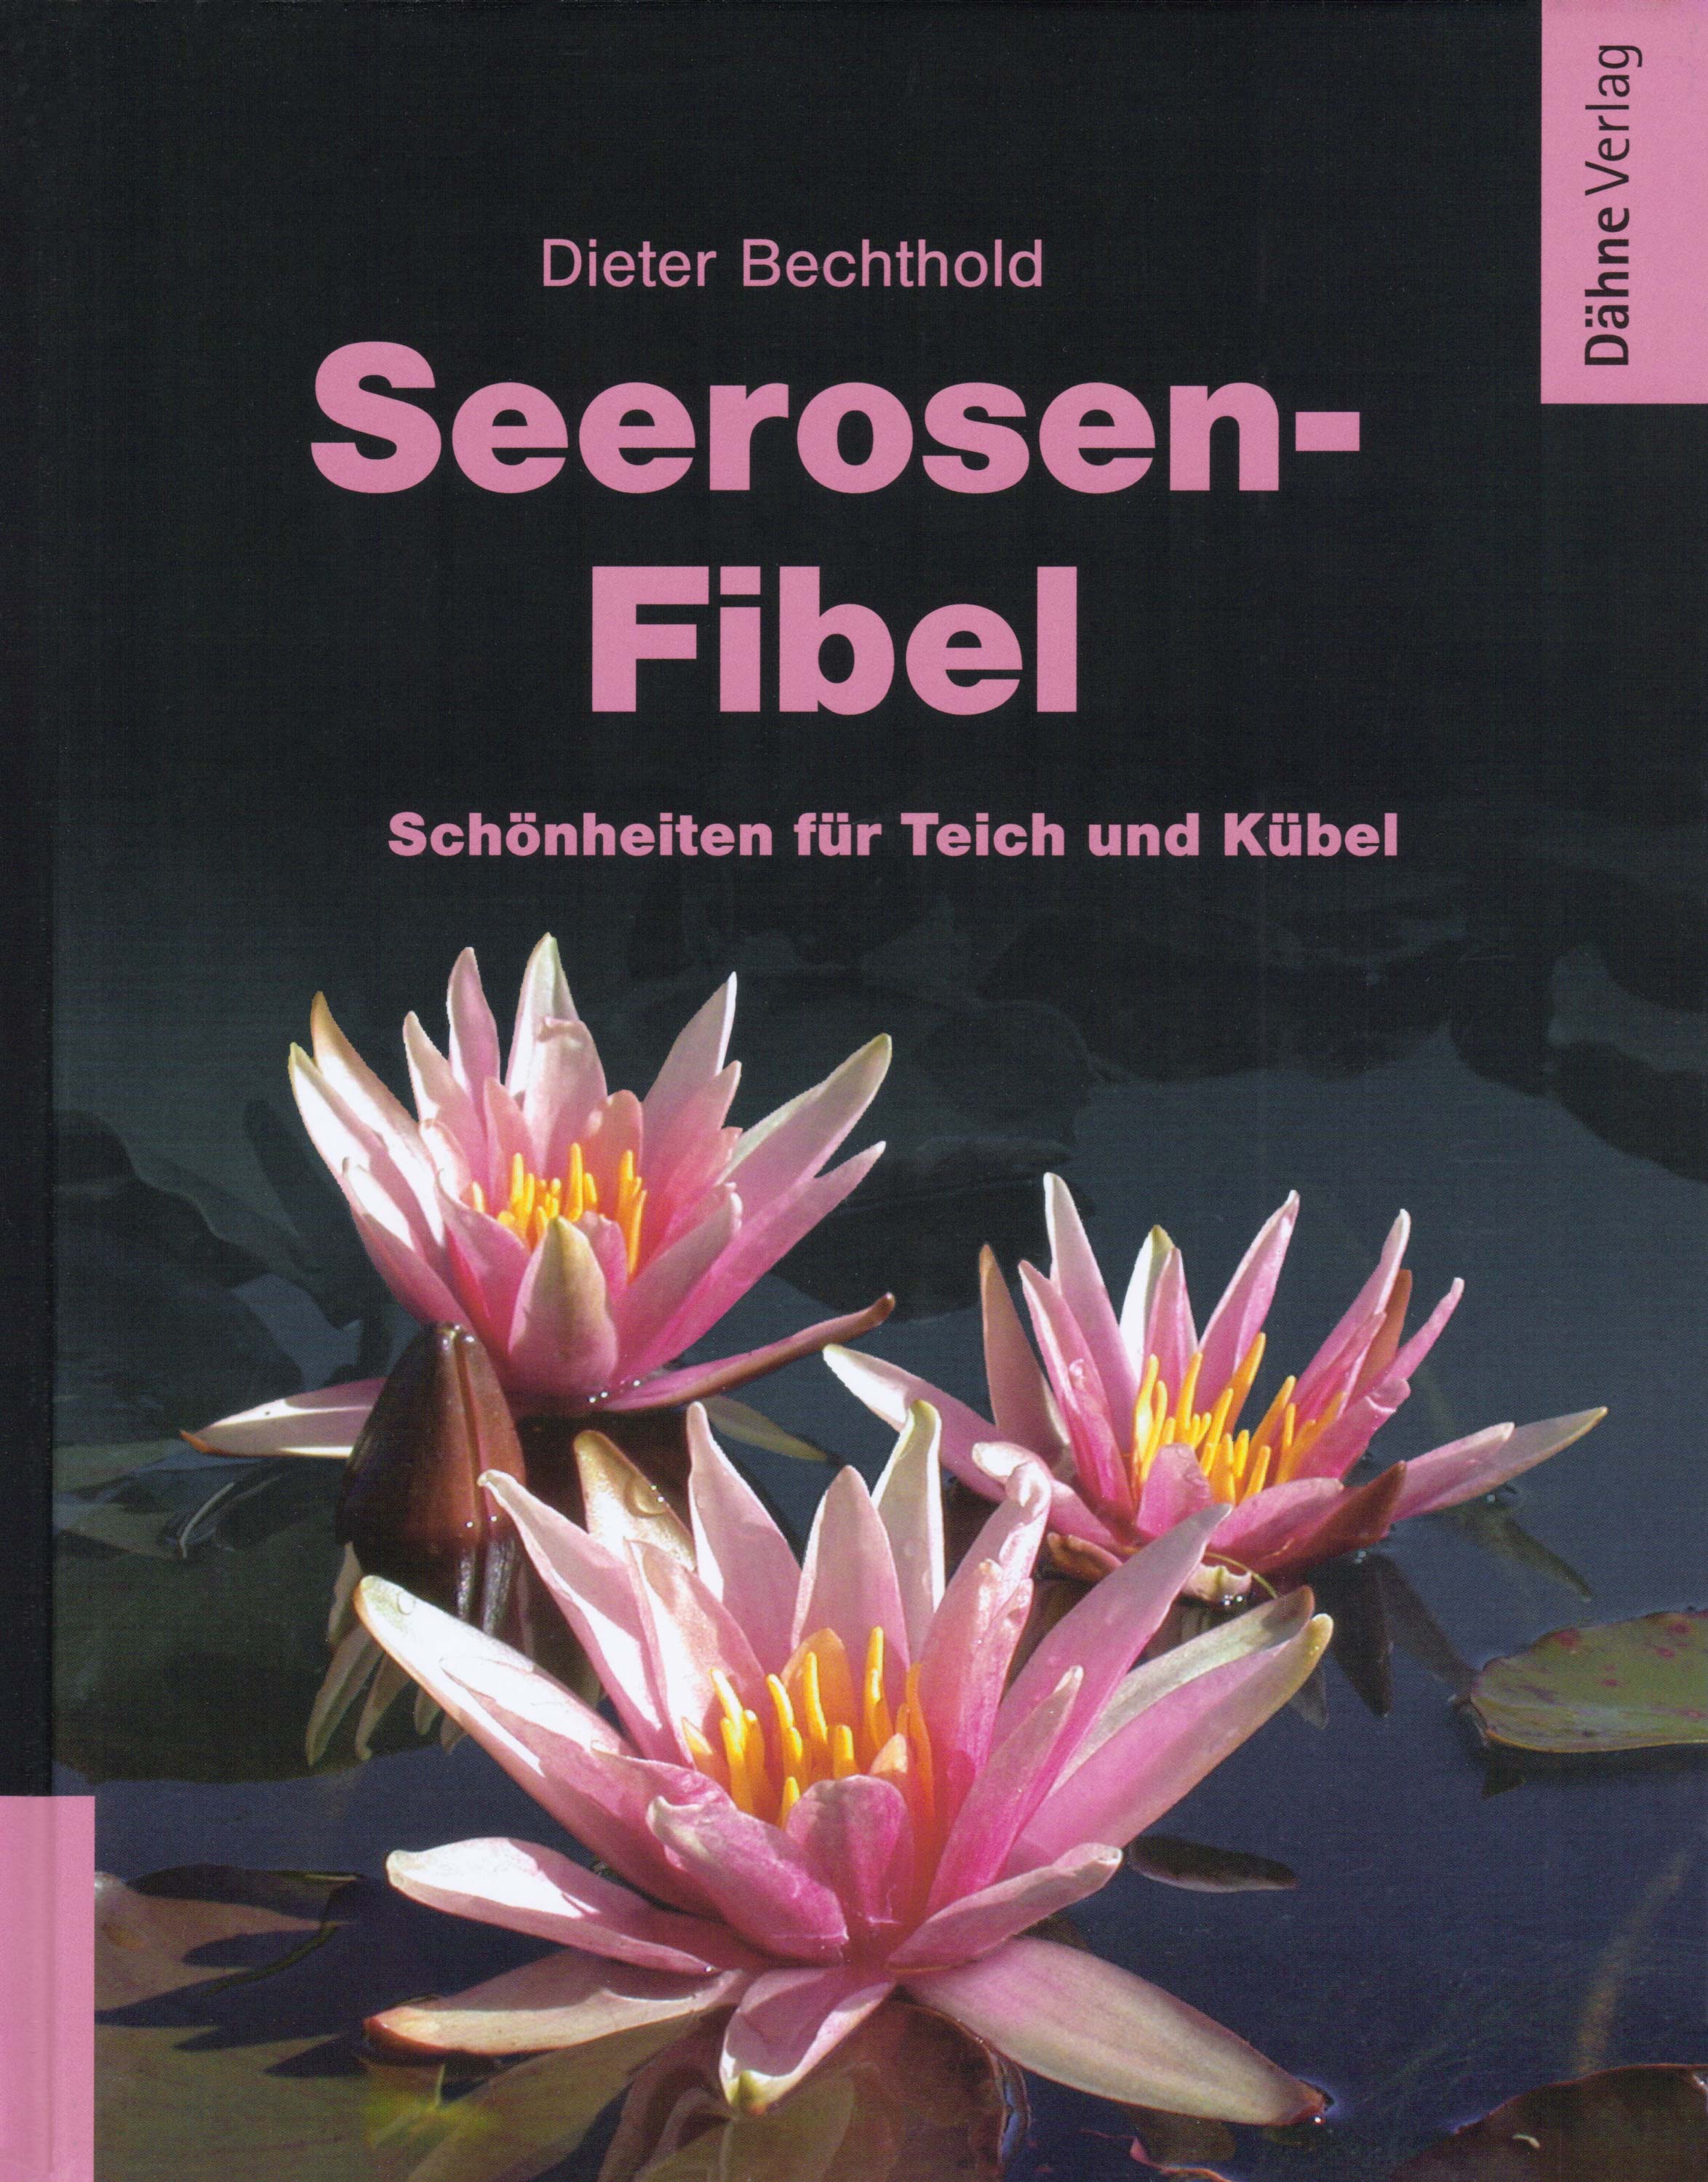 Seerosen-Fibel - Schönheiten für Teich und Kübel / Dieter Bechthold